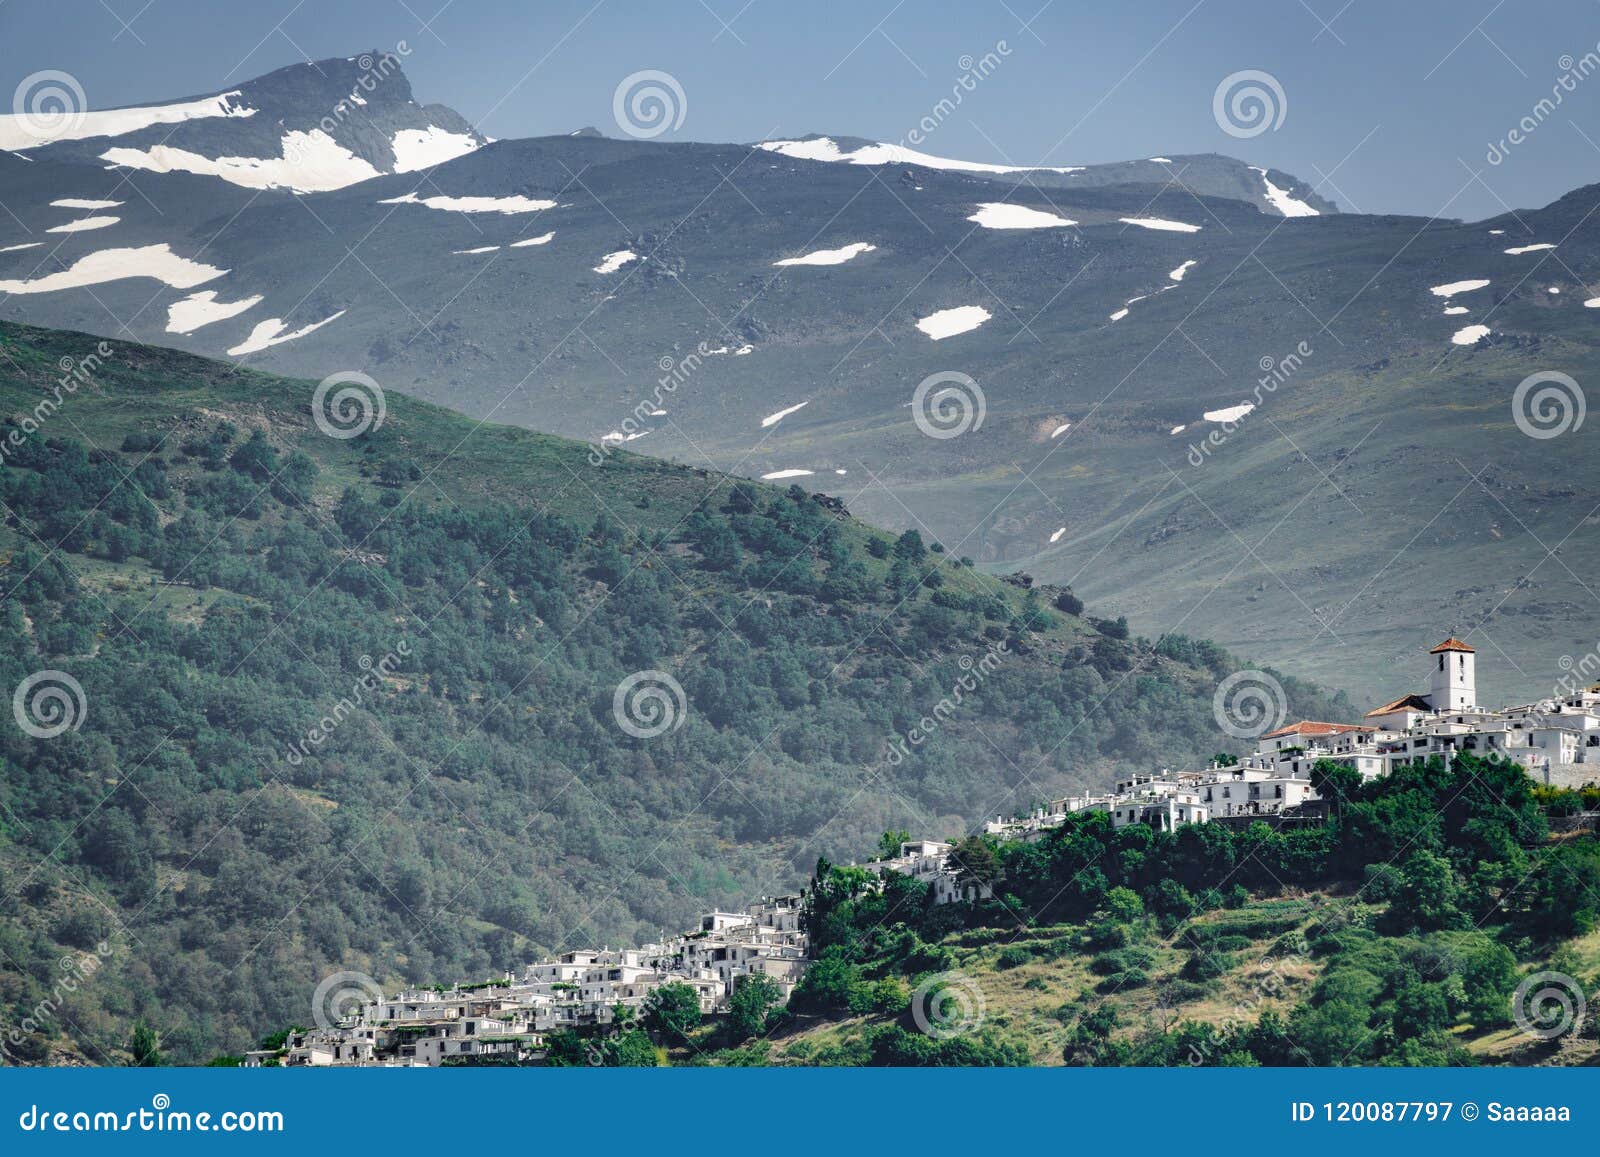 white andalusian village of capileira with veleta mountain peak